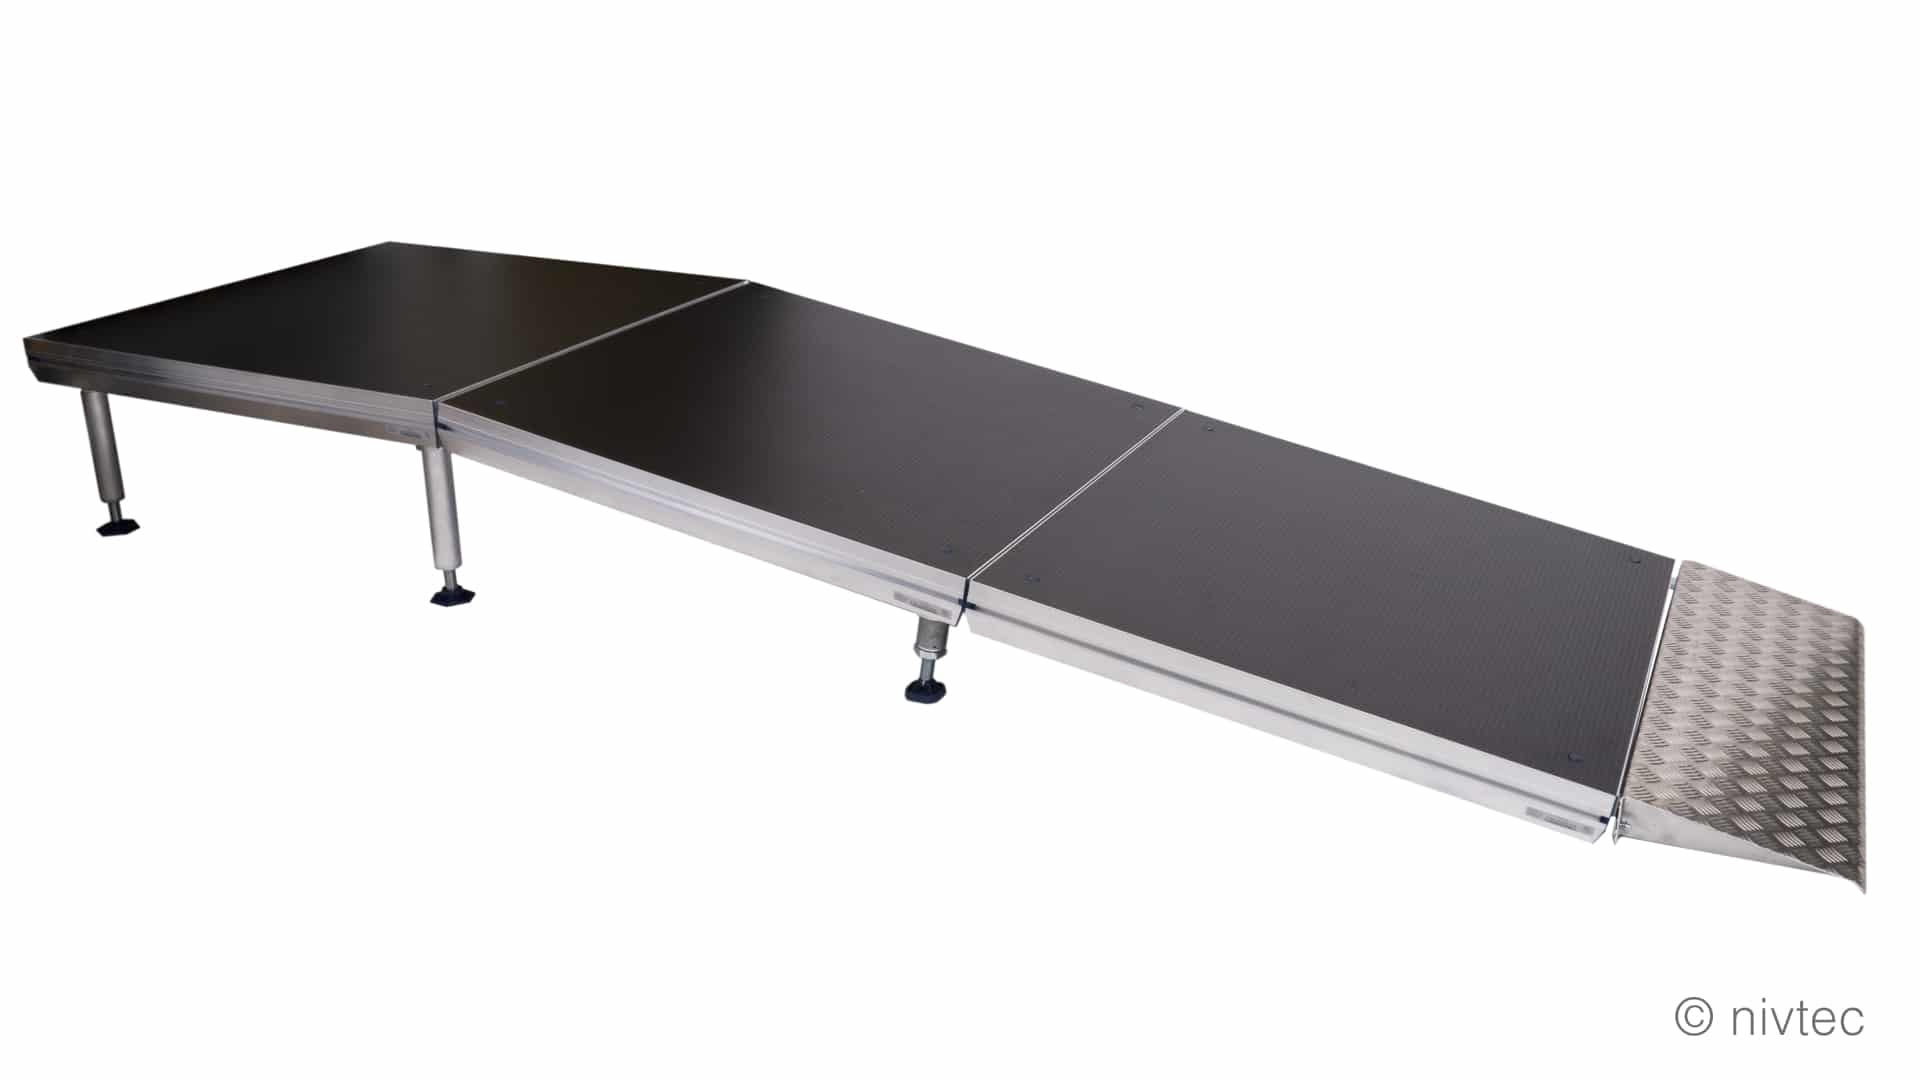 Nivtecs ramper är godkända för rullstolar och kan även användas som ramper för flyglar, pianon, högtalare med mera.